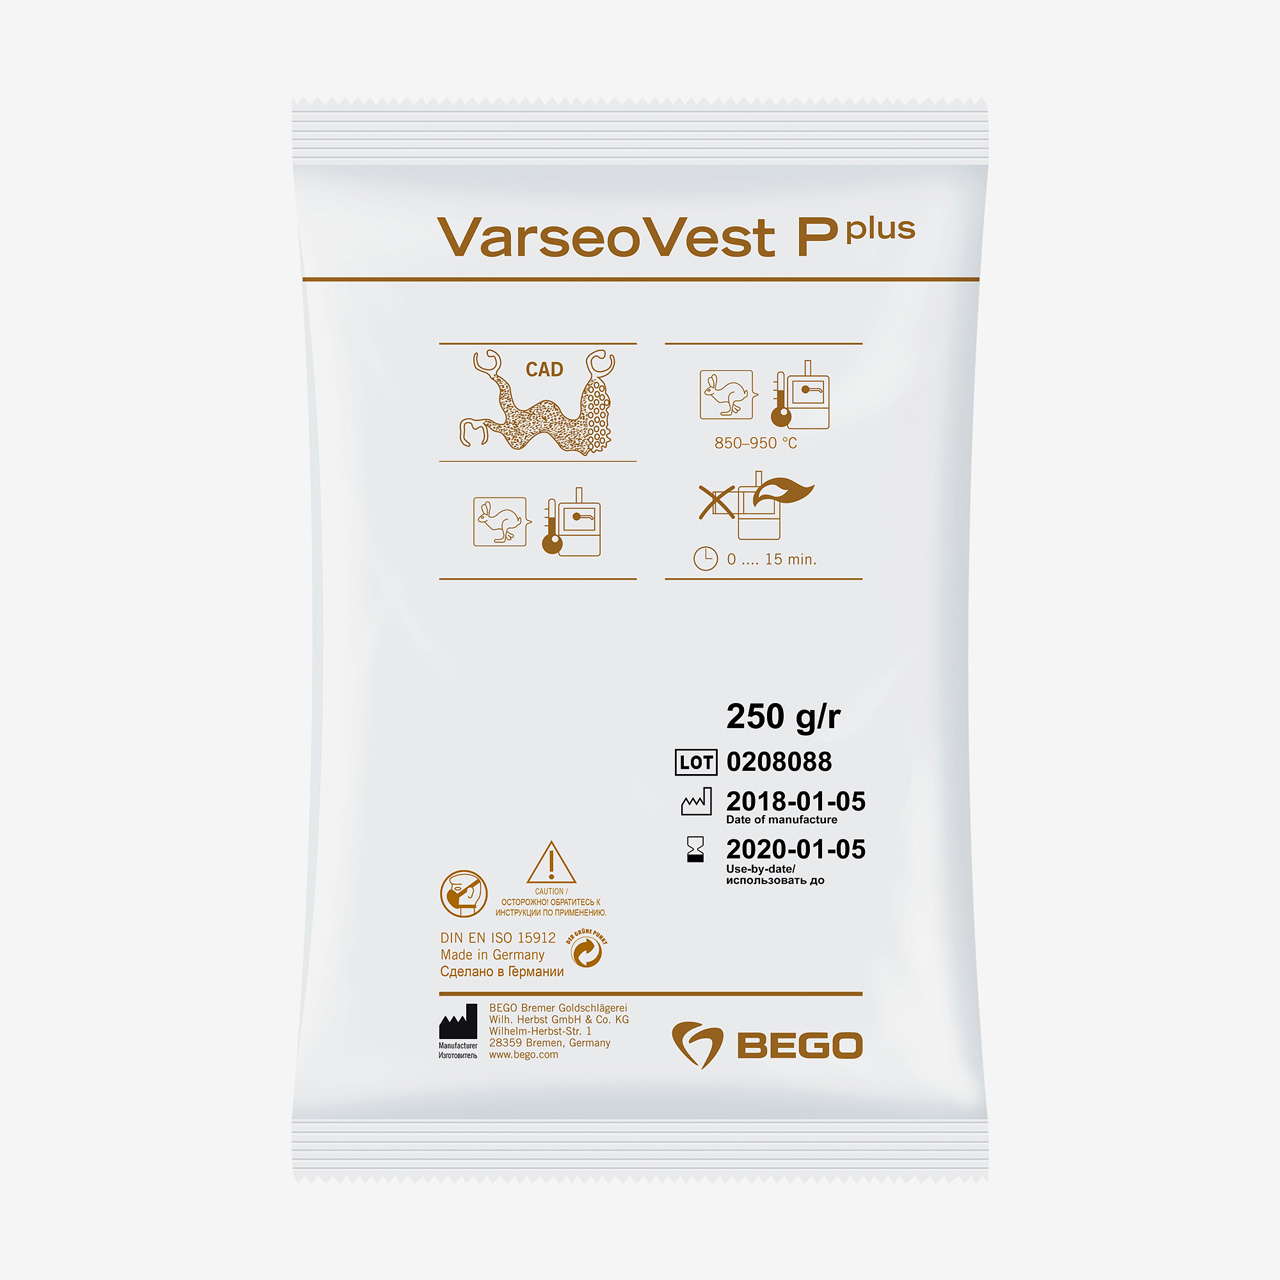 VarseoVest-Pplus_250g-Kopie